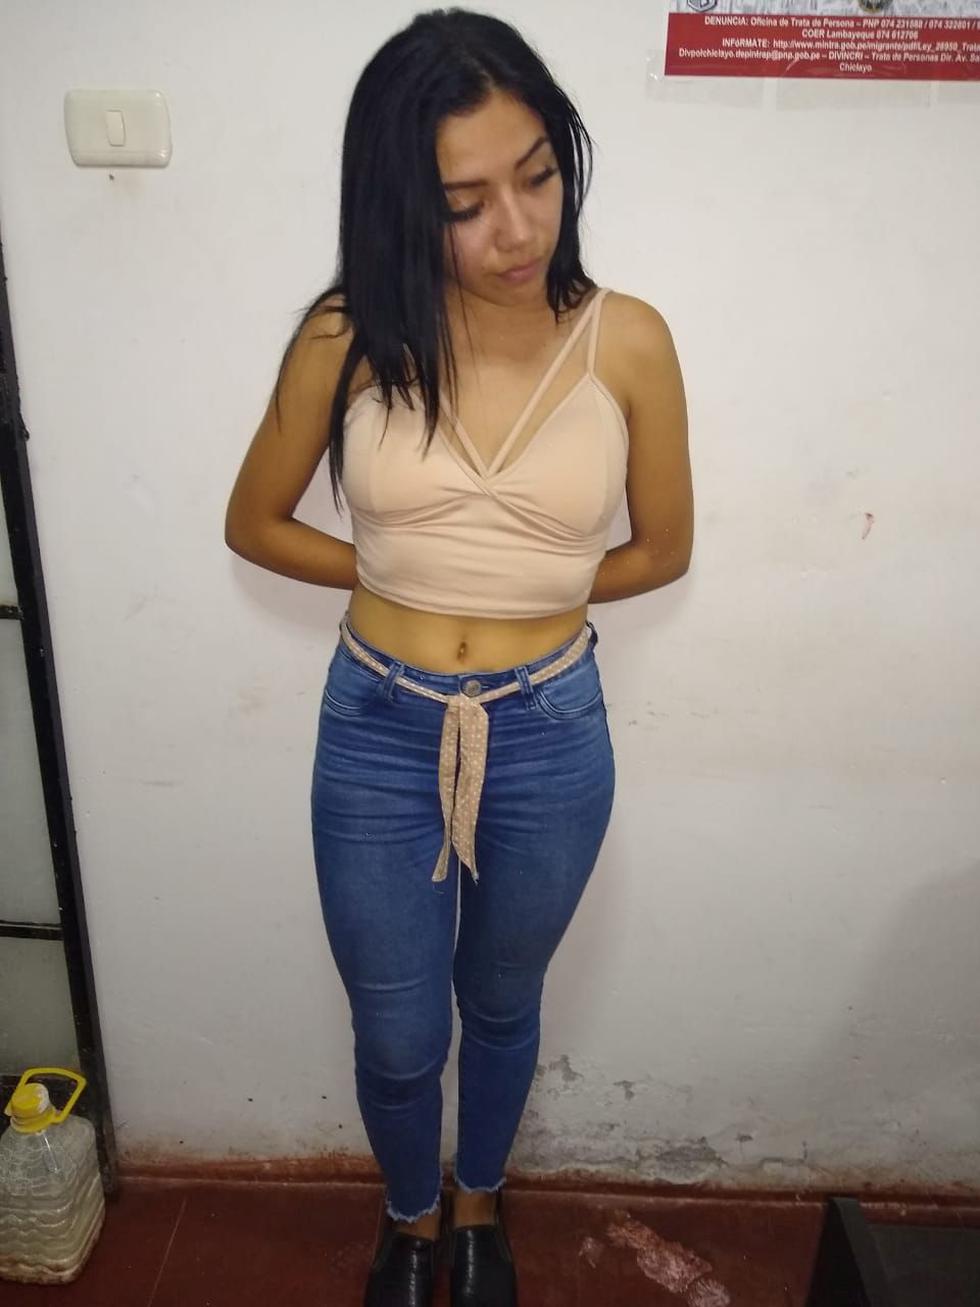 La conductora de TV Kimberly Severino Mirez captó a la joven por las redes sociales. Ella y su pareja encabezarían la red de prostitución. (PNP)